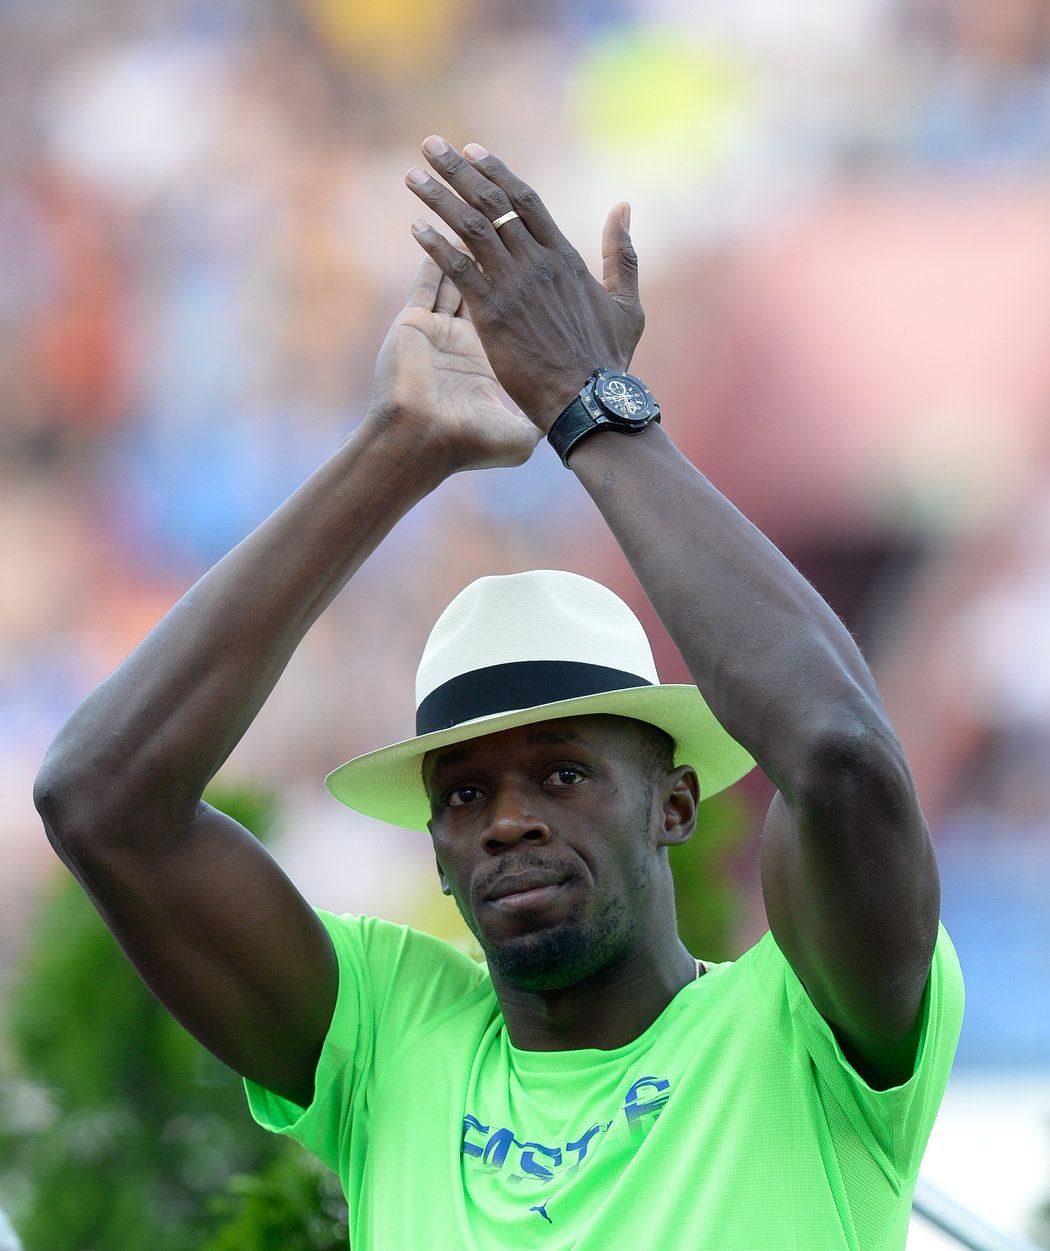 Držitelem světového rekordu na dvoustovce je stále Usain Bolt